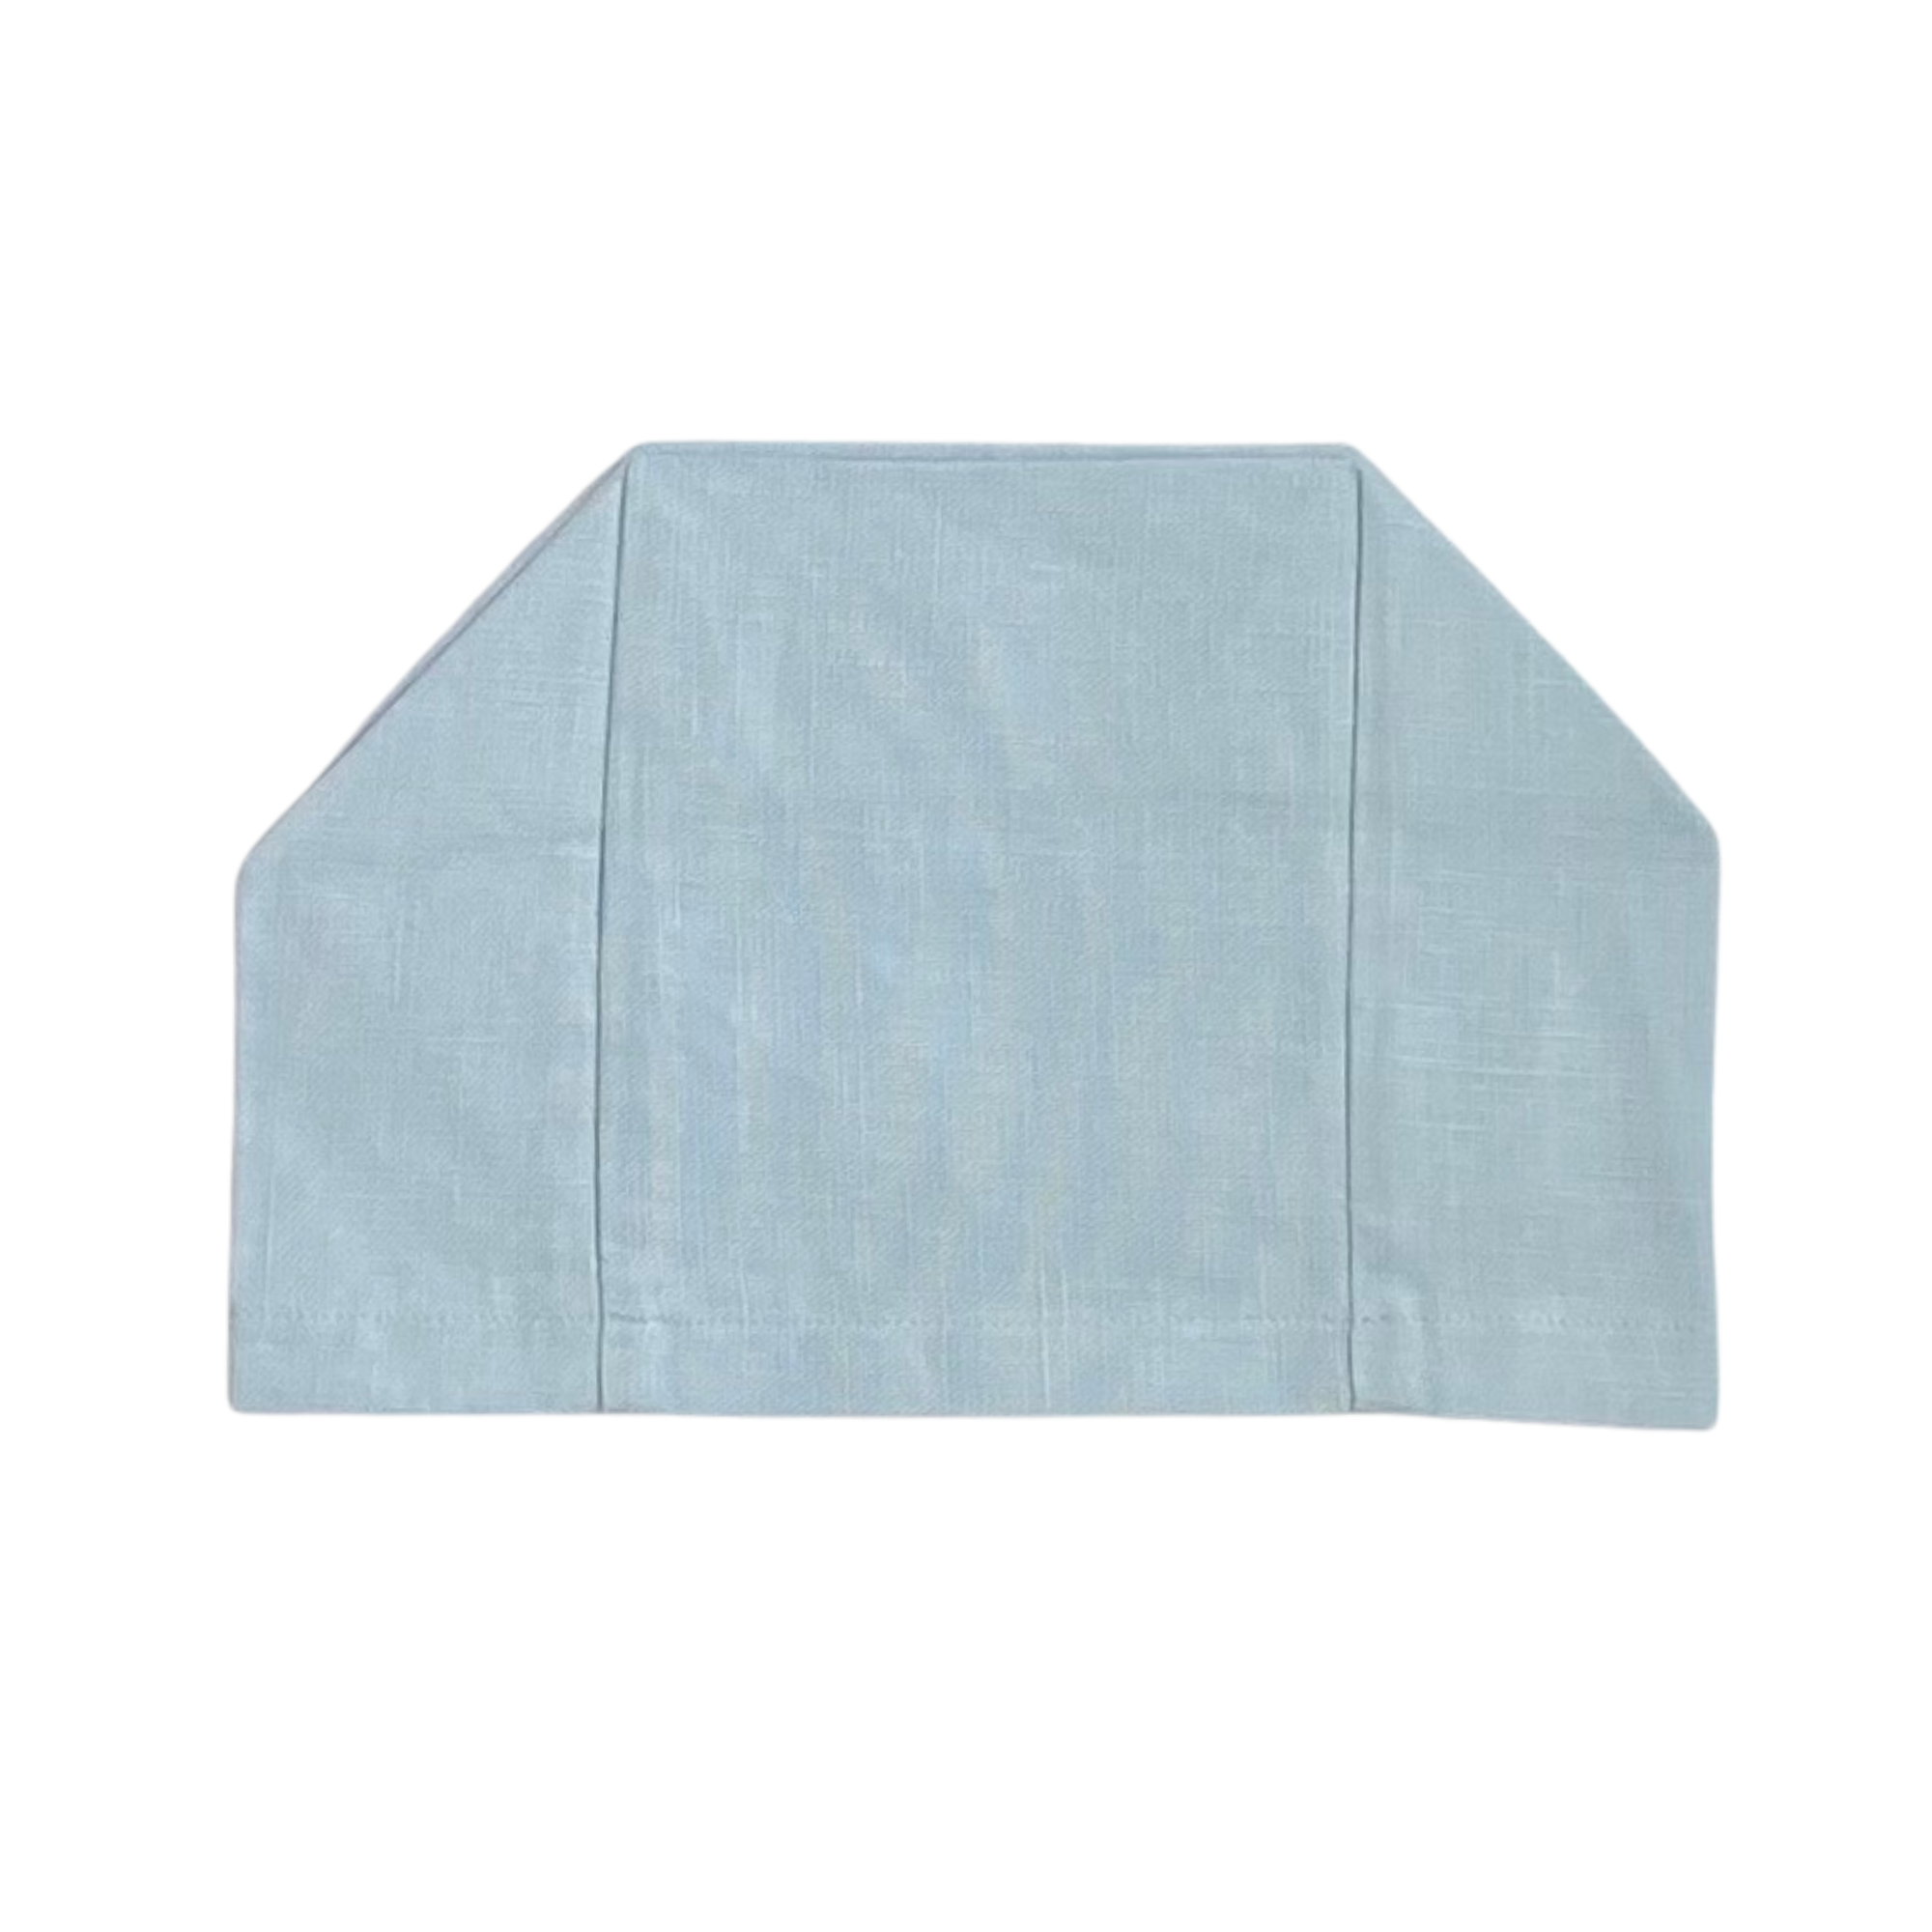 Light Sky blue 100% European linen tissue box cover